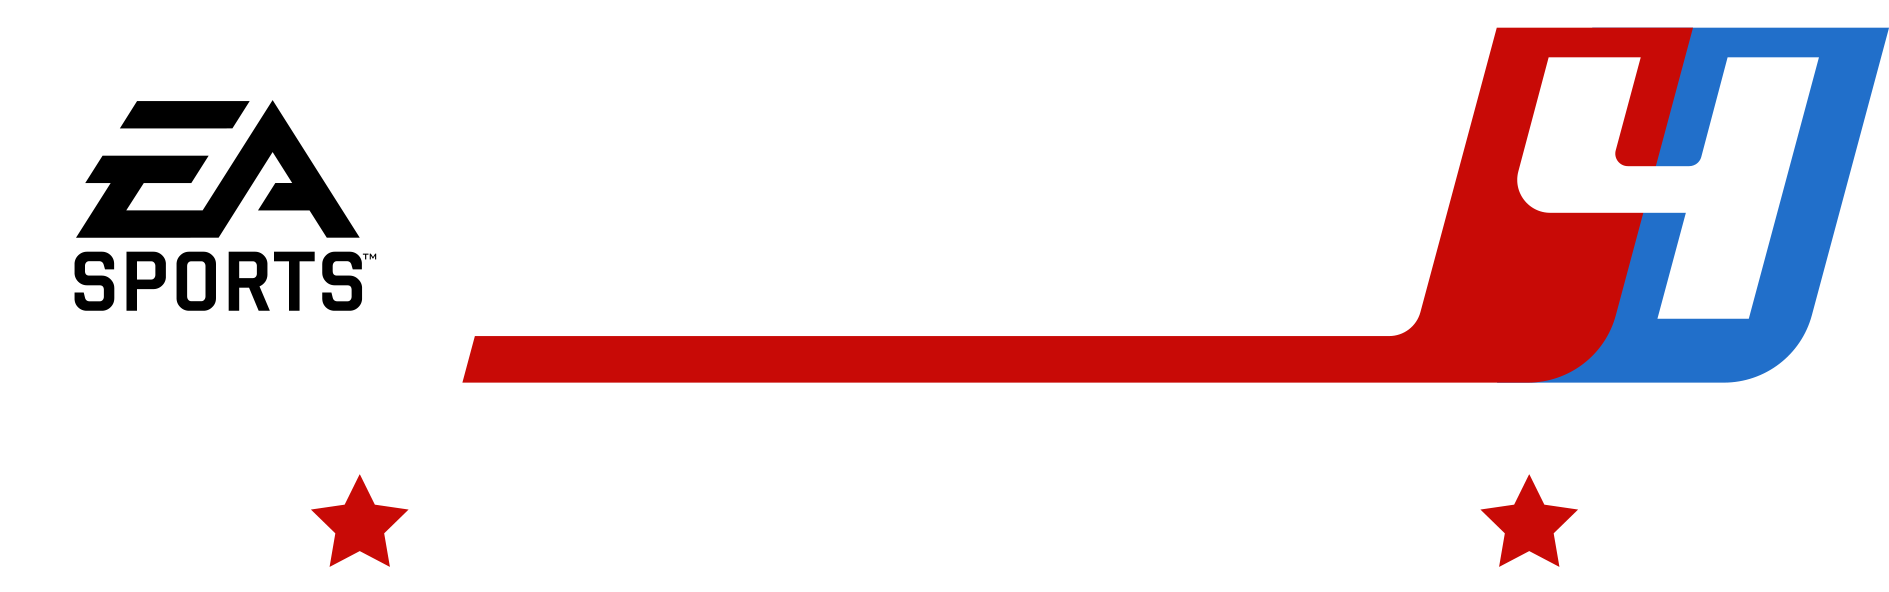 Super Mega Baseball™ 4